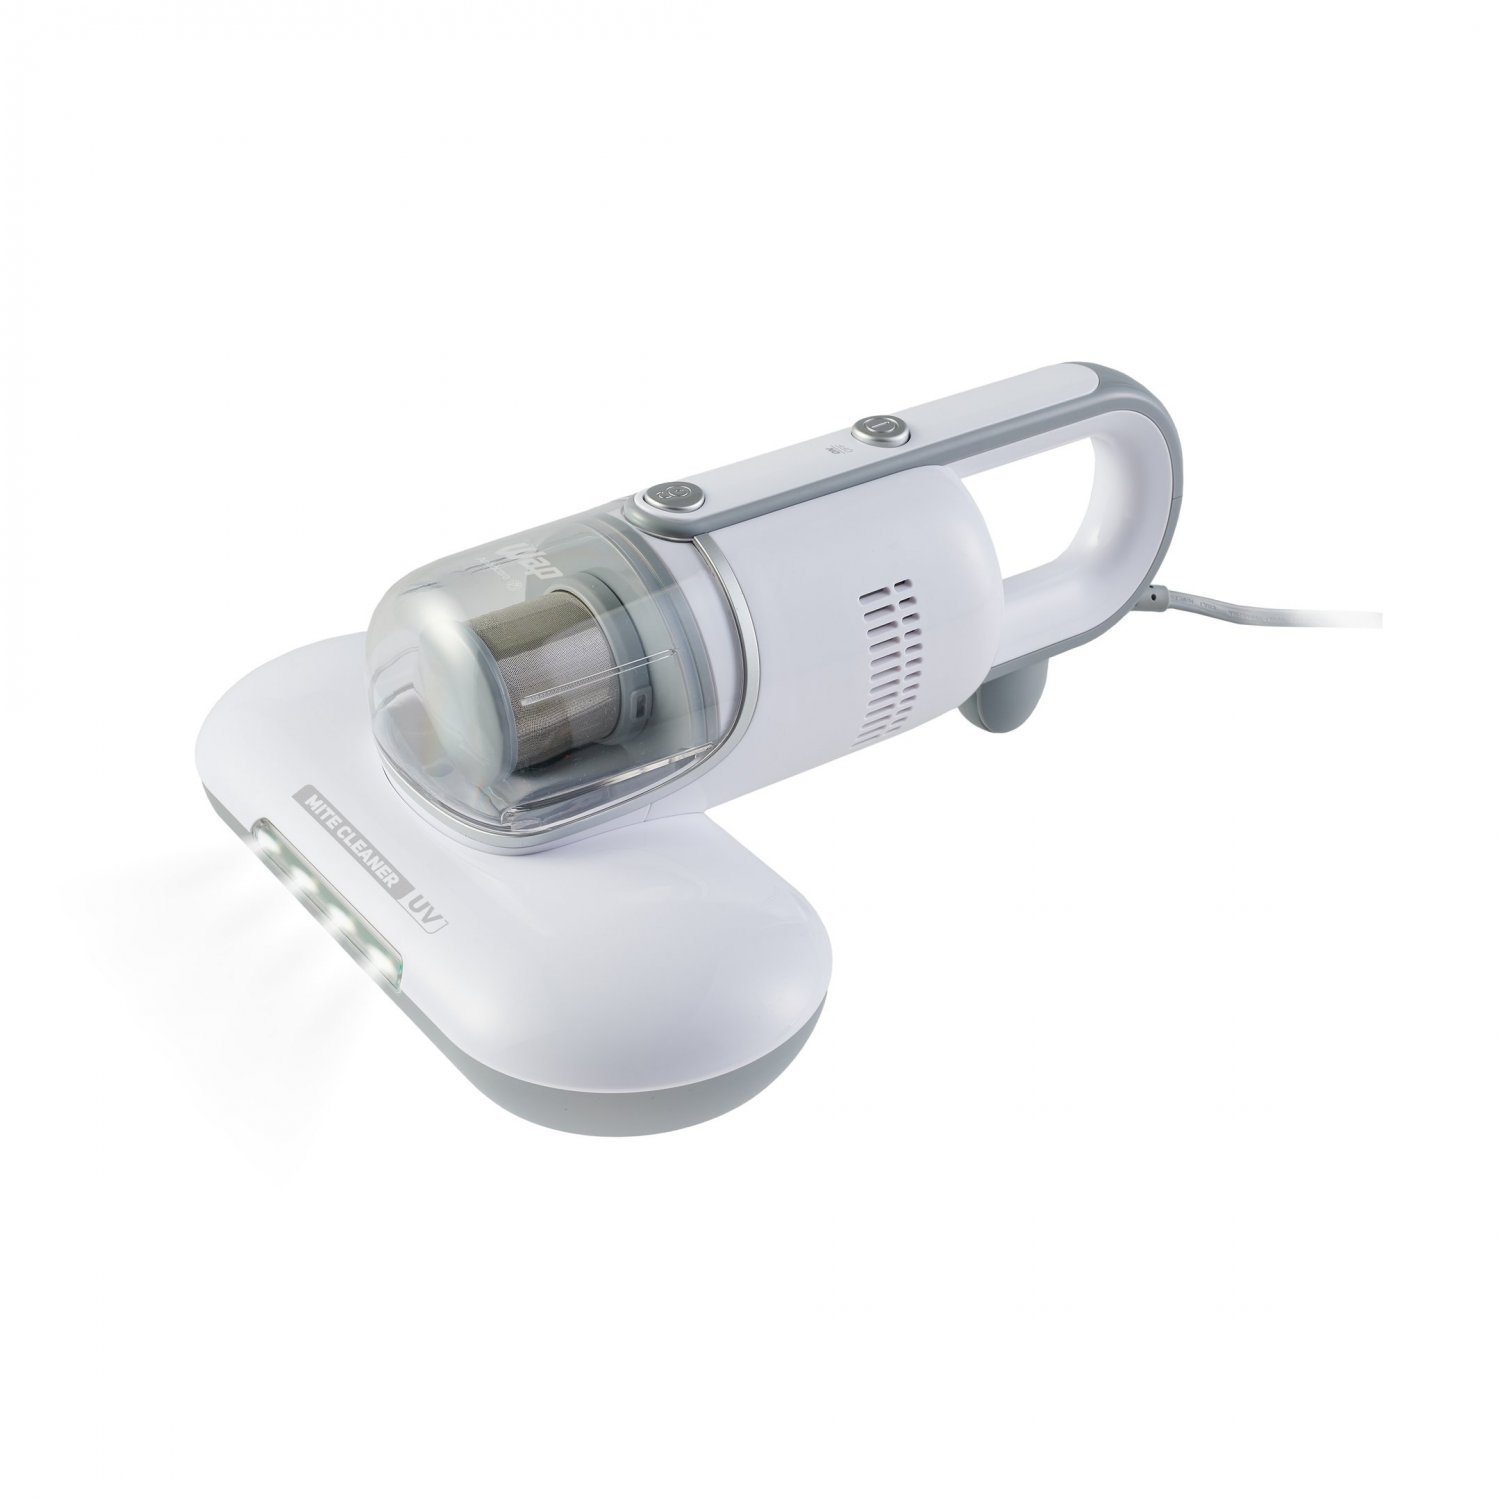 Aspirador de Pó Antiácaro WAP Mite Cleaner UV 3 em 1 com Lâmpada Ultravioleta 127V Branco - 3